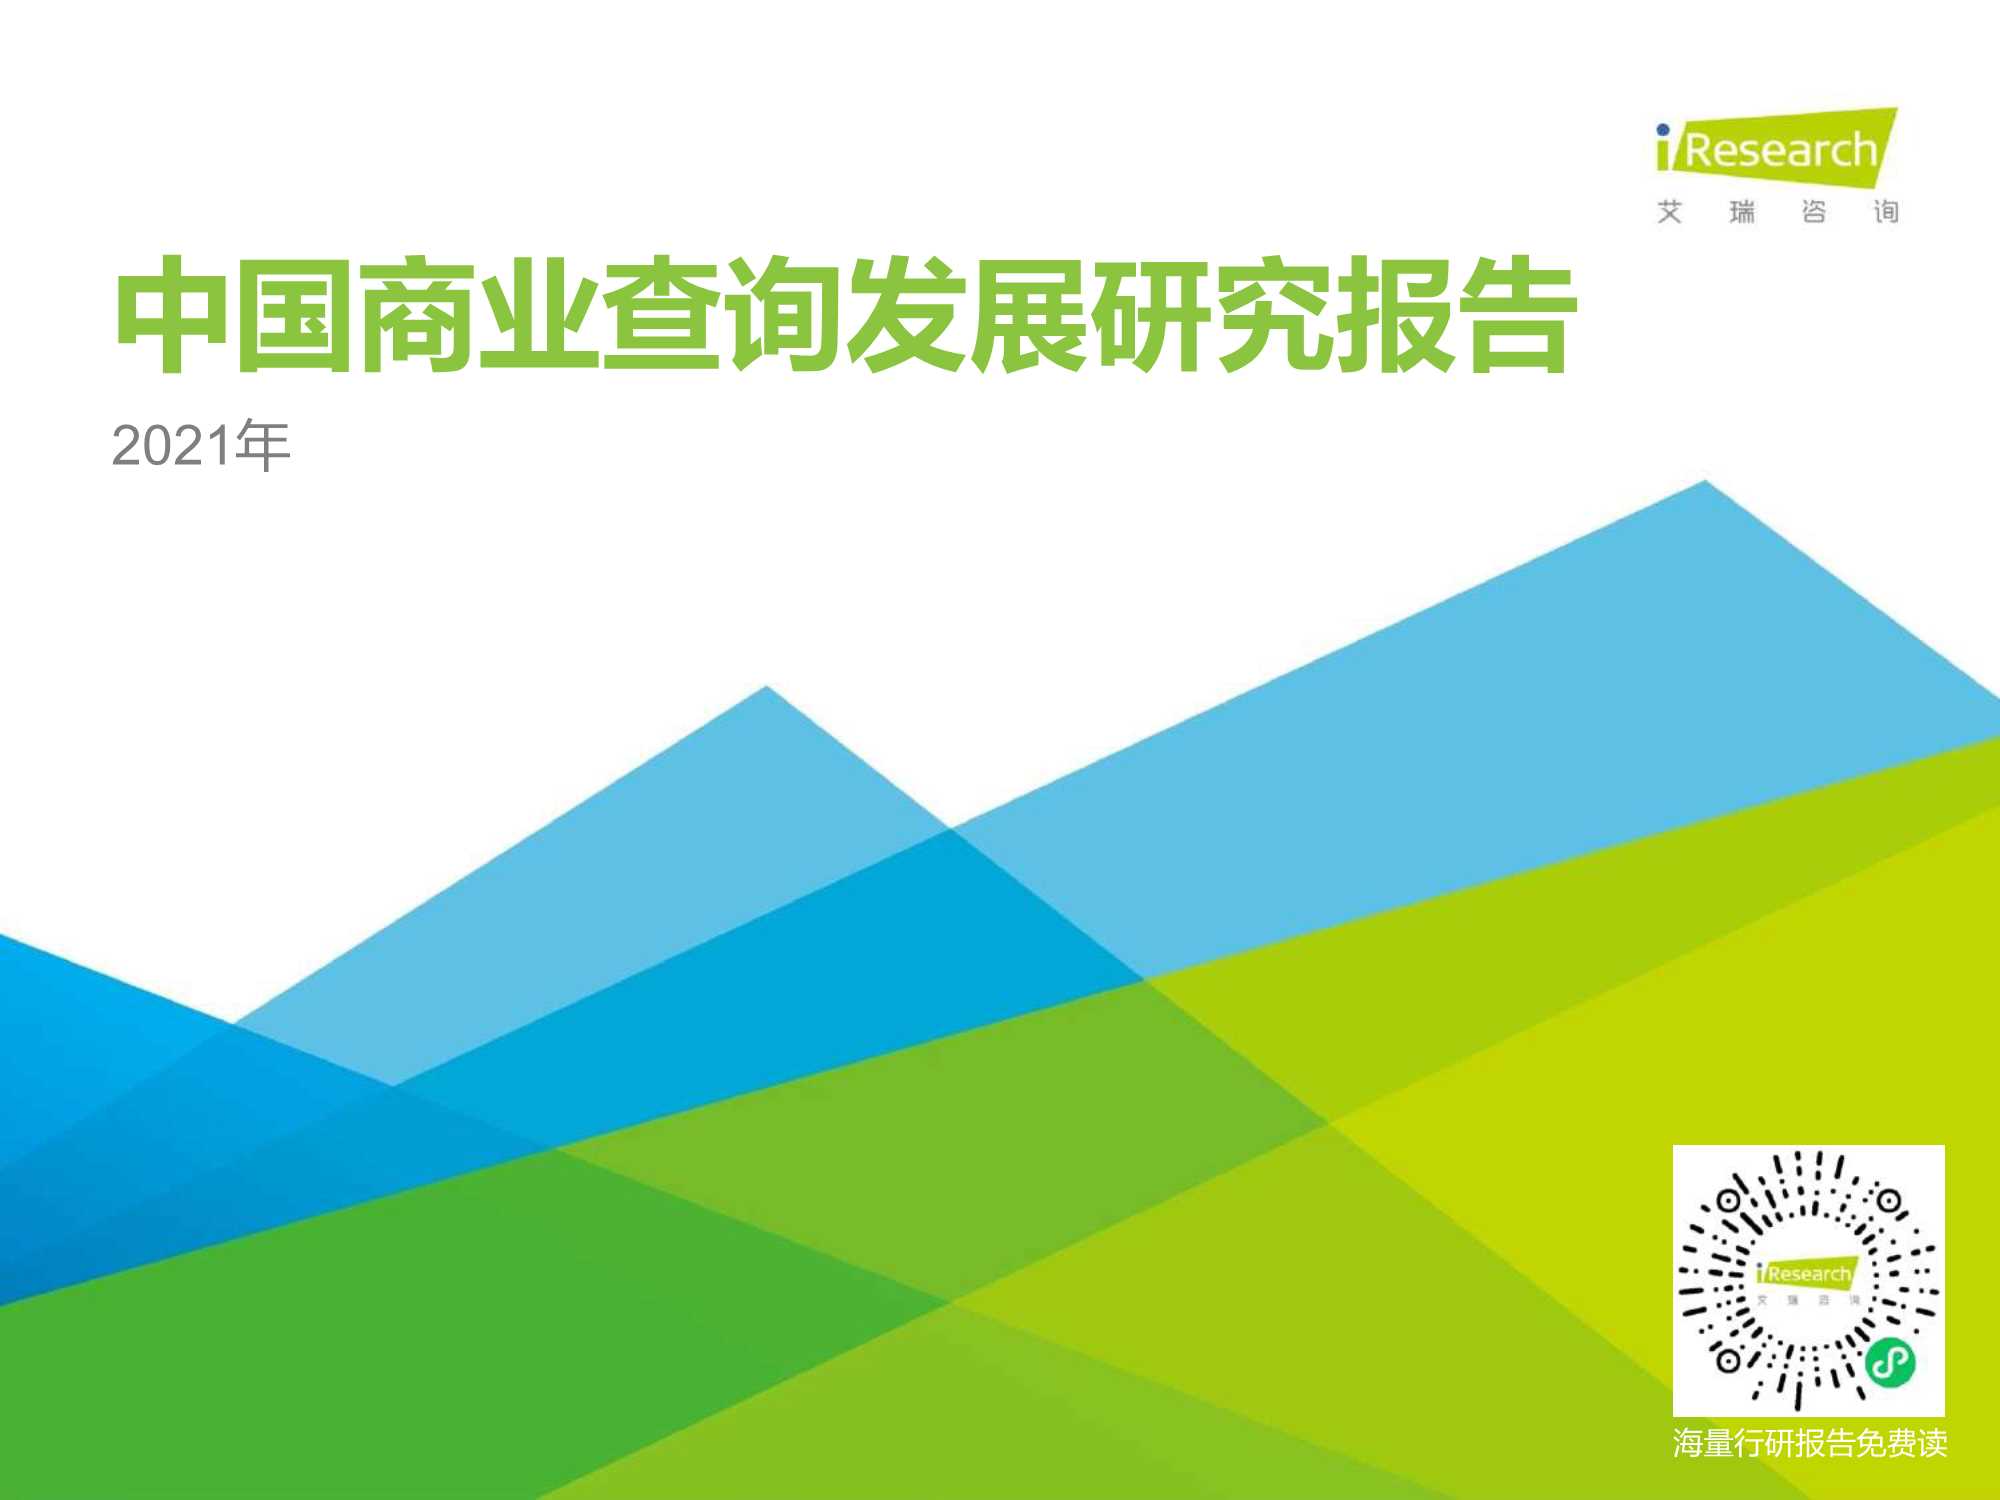 艾瑞咨询-2021年中国商业查询发展研究报告-2021.06-36页